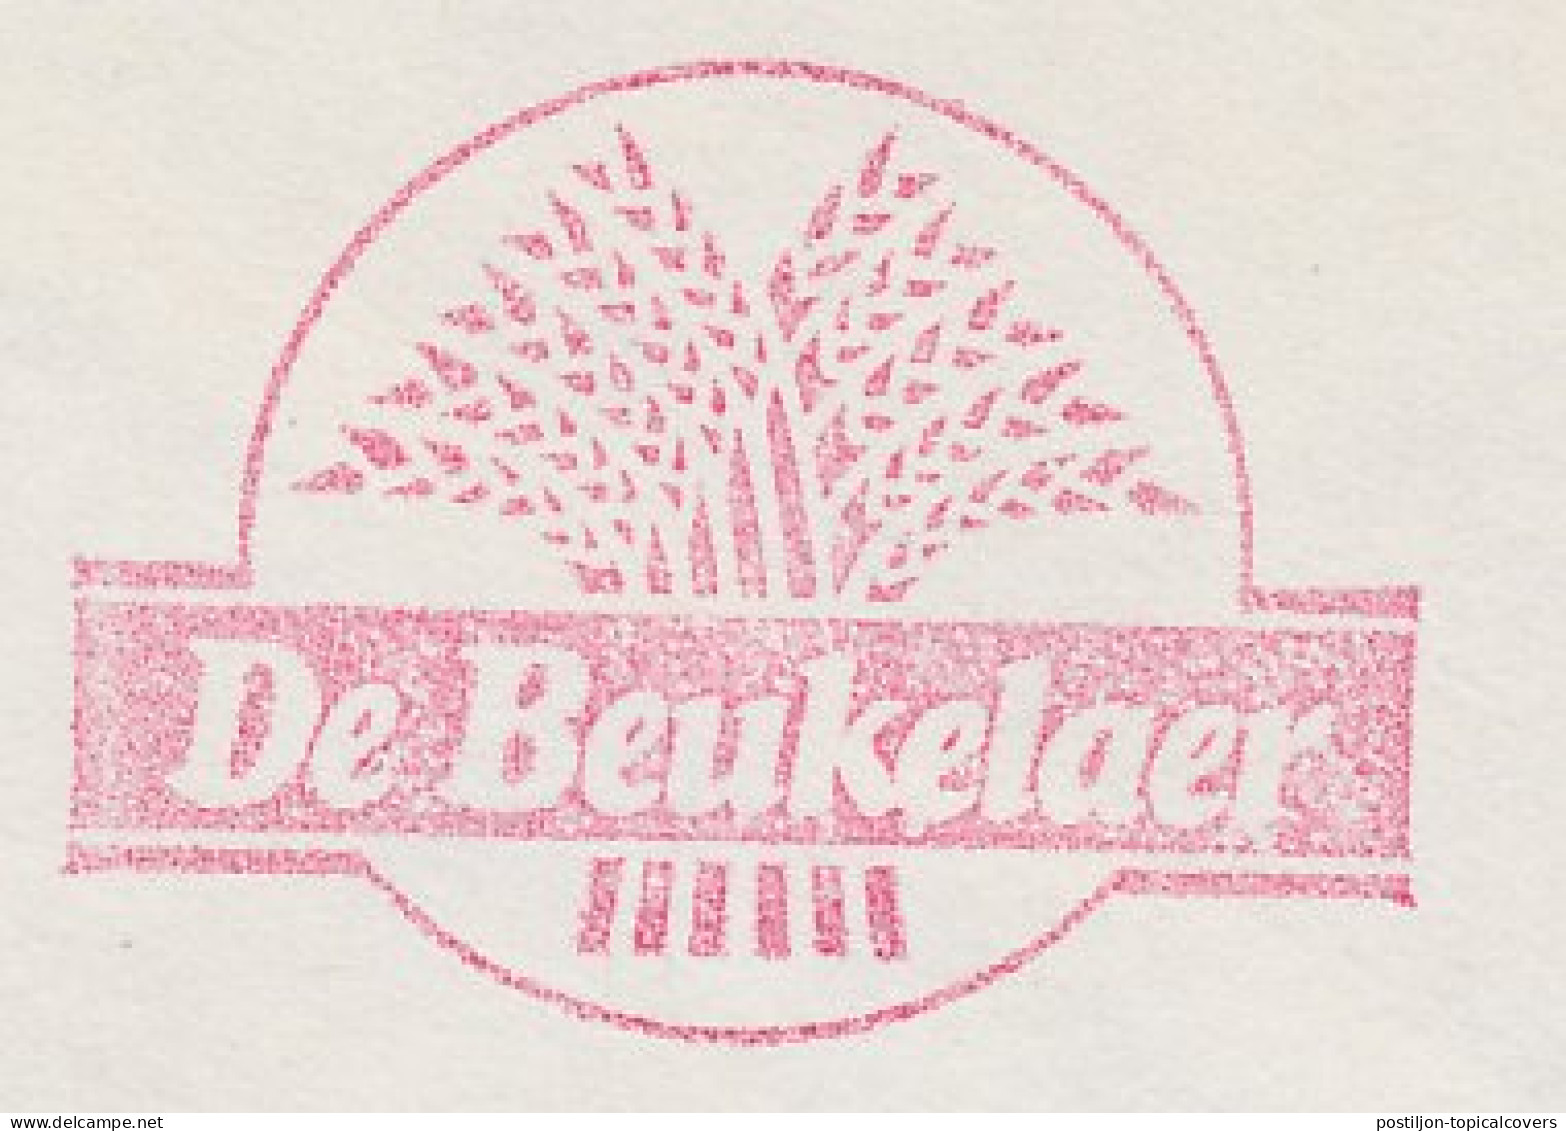 Meter Cover Belgium 1983 Sheaf Of Corn - De Beukelaer - Landwirtschaft